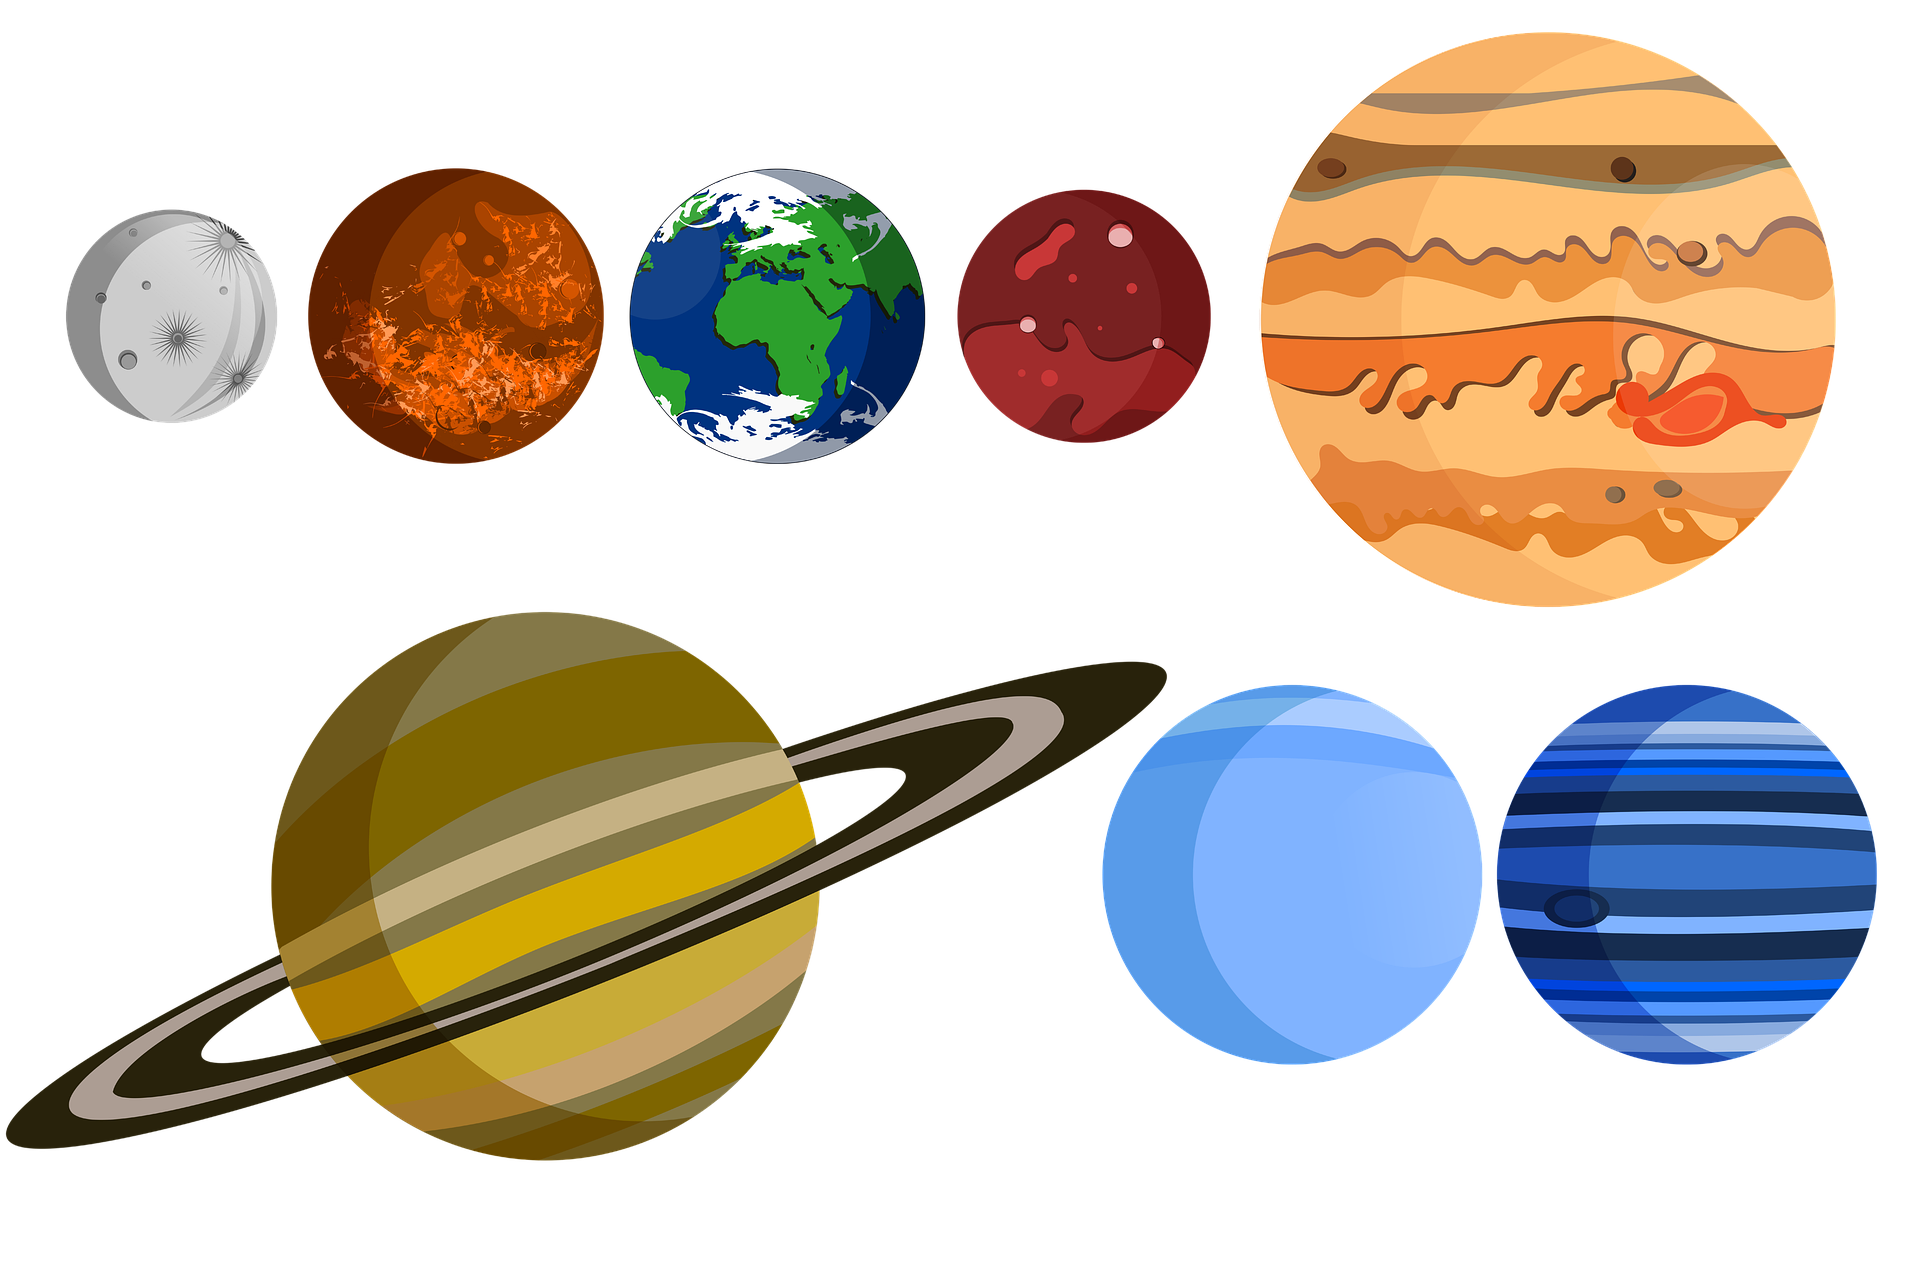 Планеты распечатать цветные. Планеты для детей. Цветные планеты для детей. Планеты для распечатки. Планеты солнечной системы.